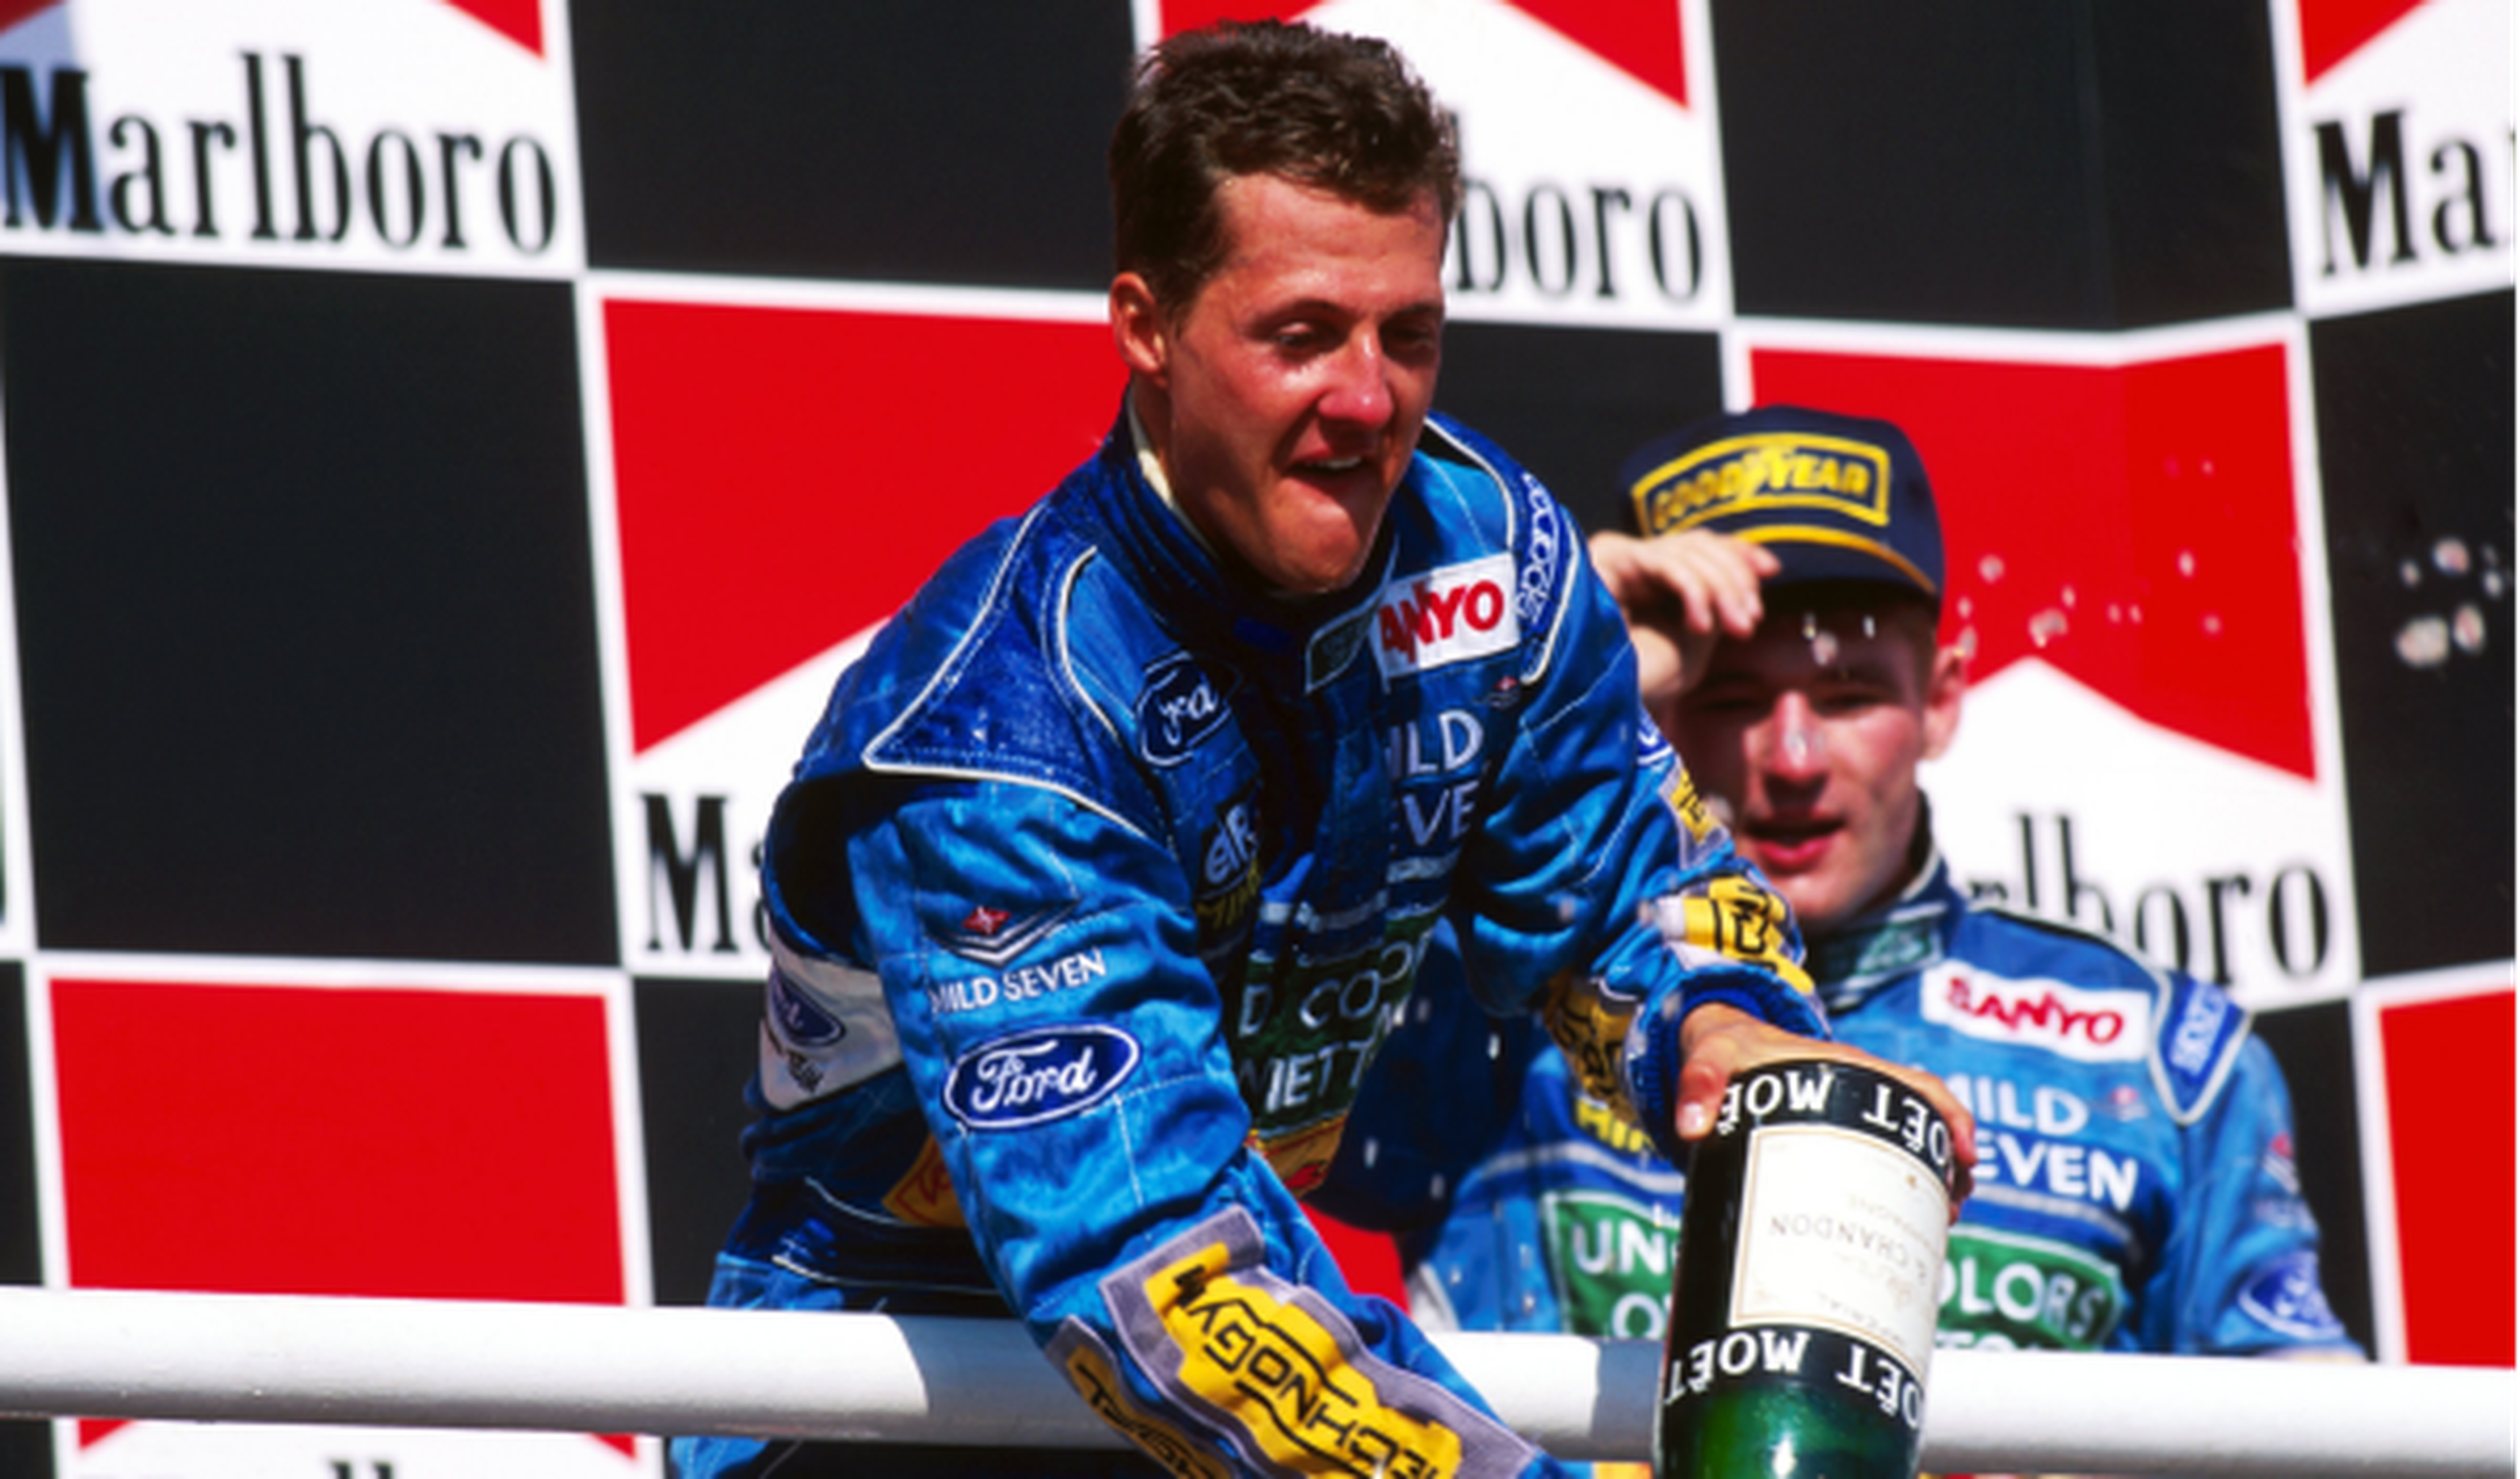 Jos-Verstappen-Schumacher-Hungria-1994